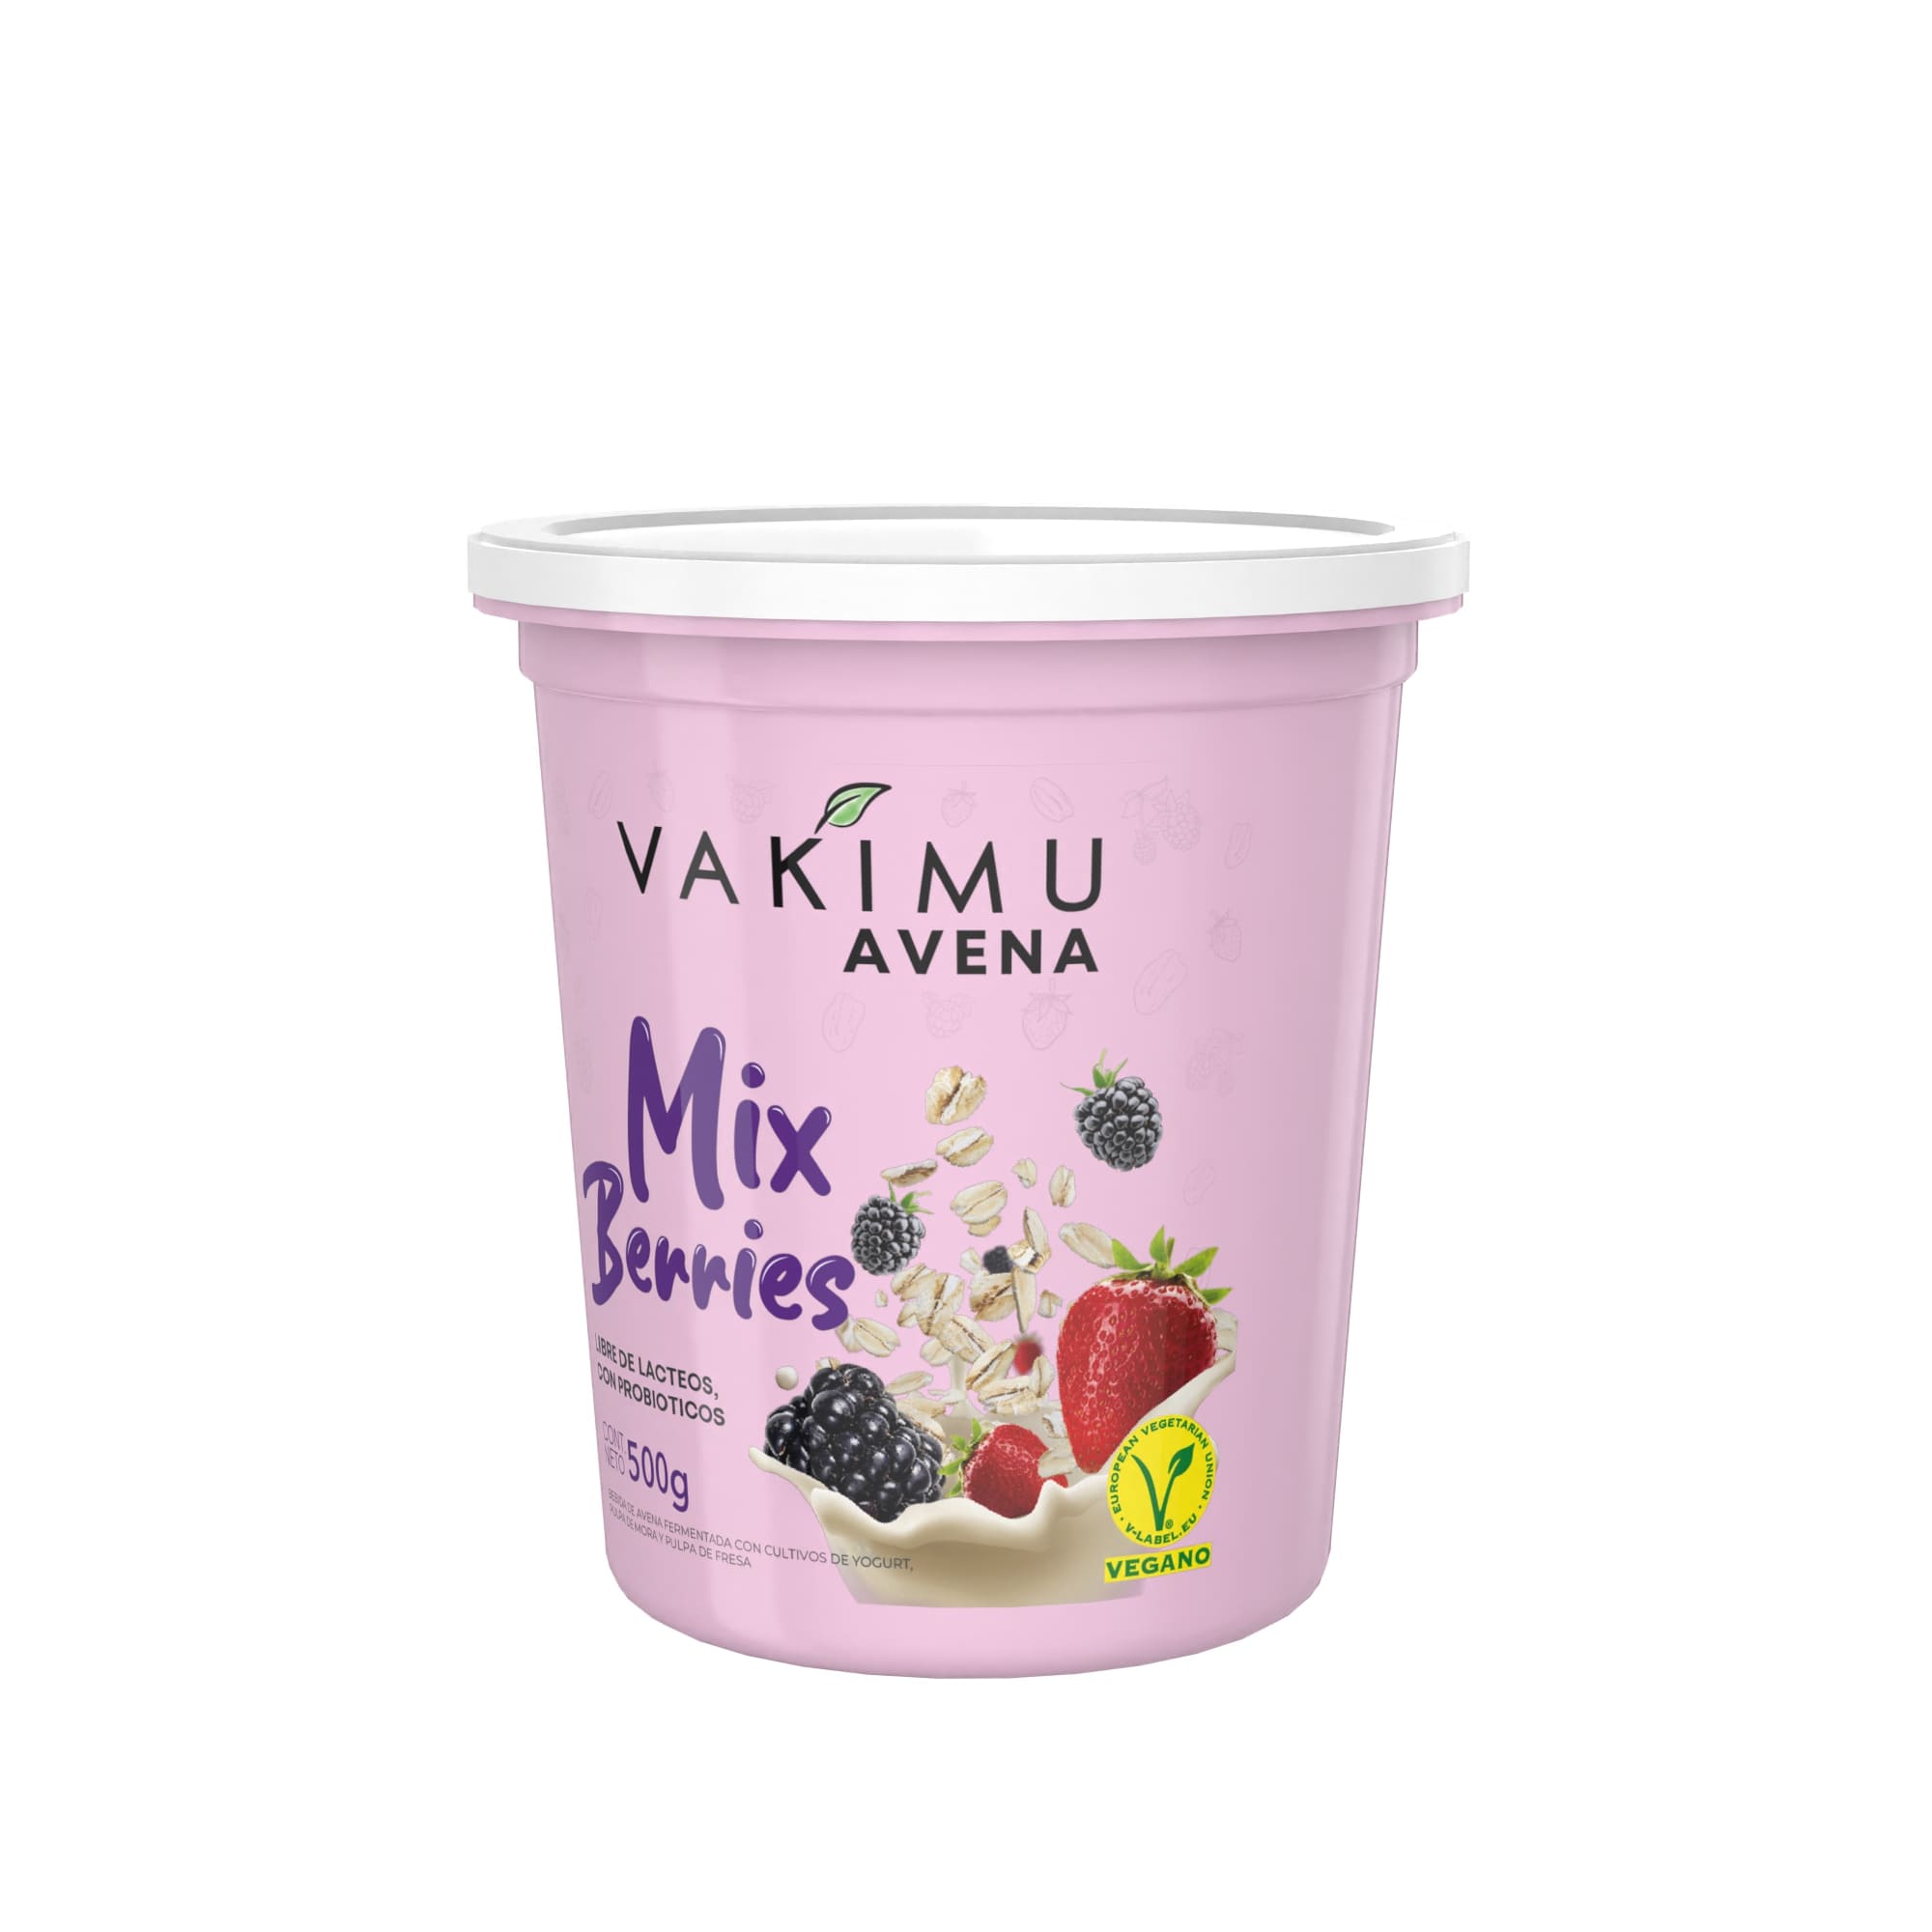 Avena Vakimu Mix Berries 500g